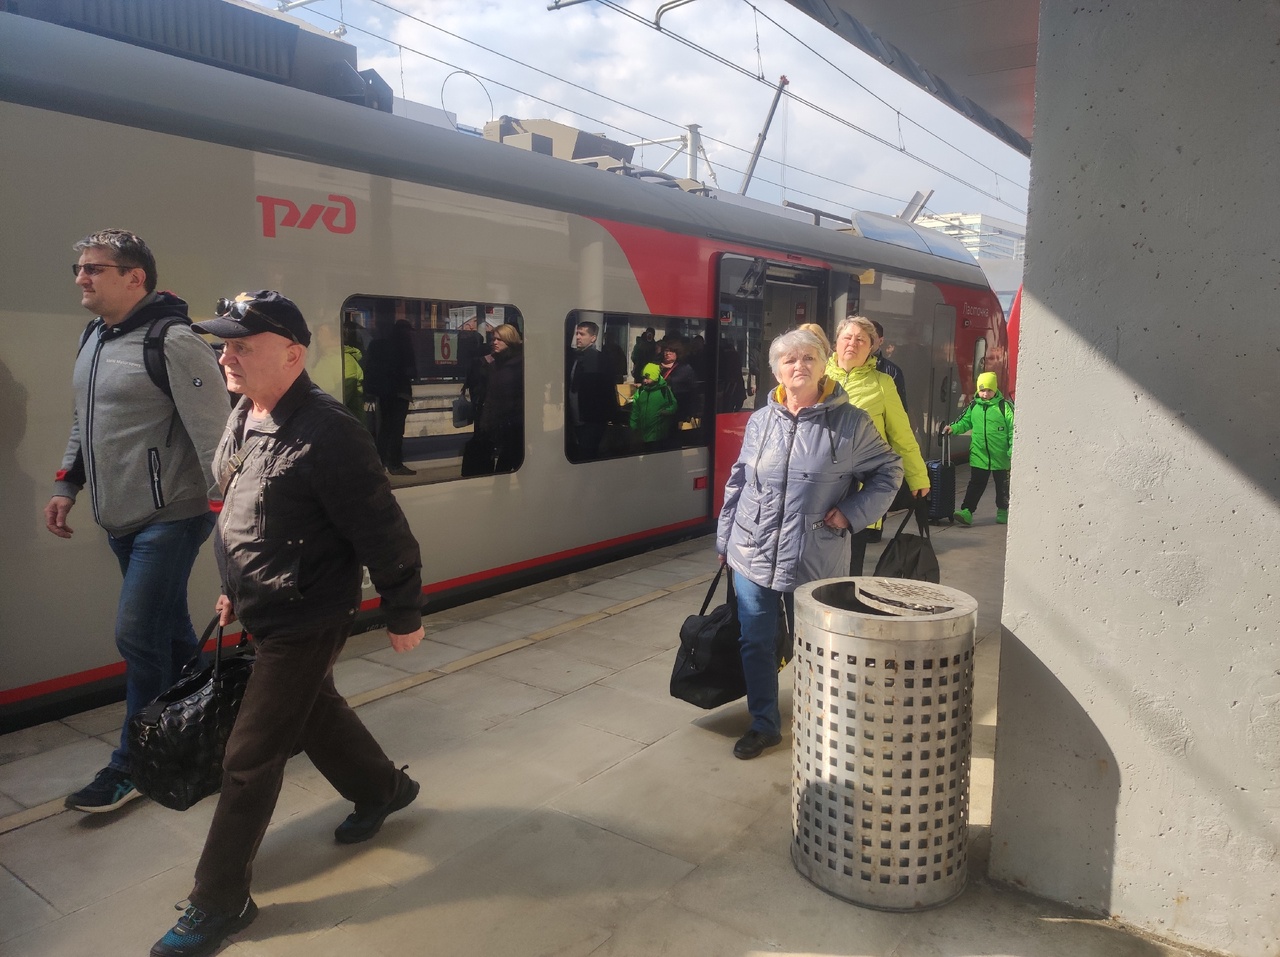 Людей услышали: в поезде Йошкар-Ола - Казань увеличили количество вагонов 